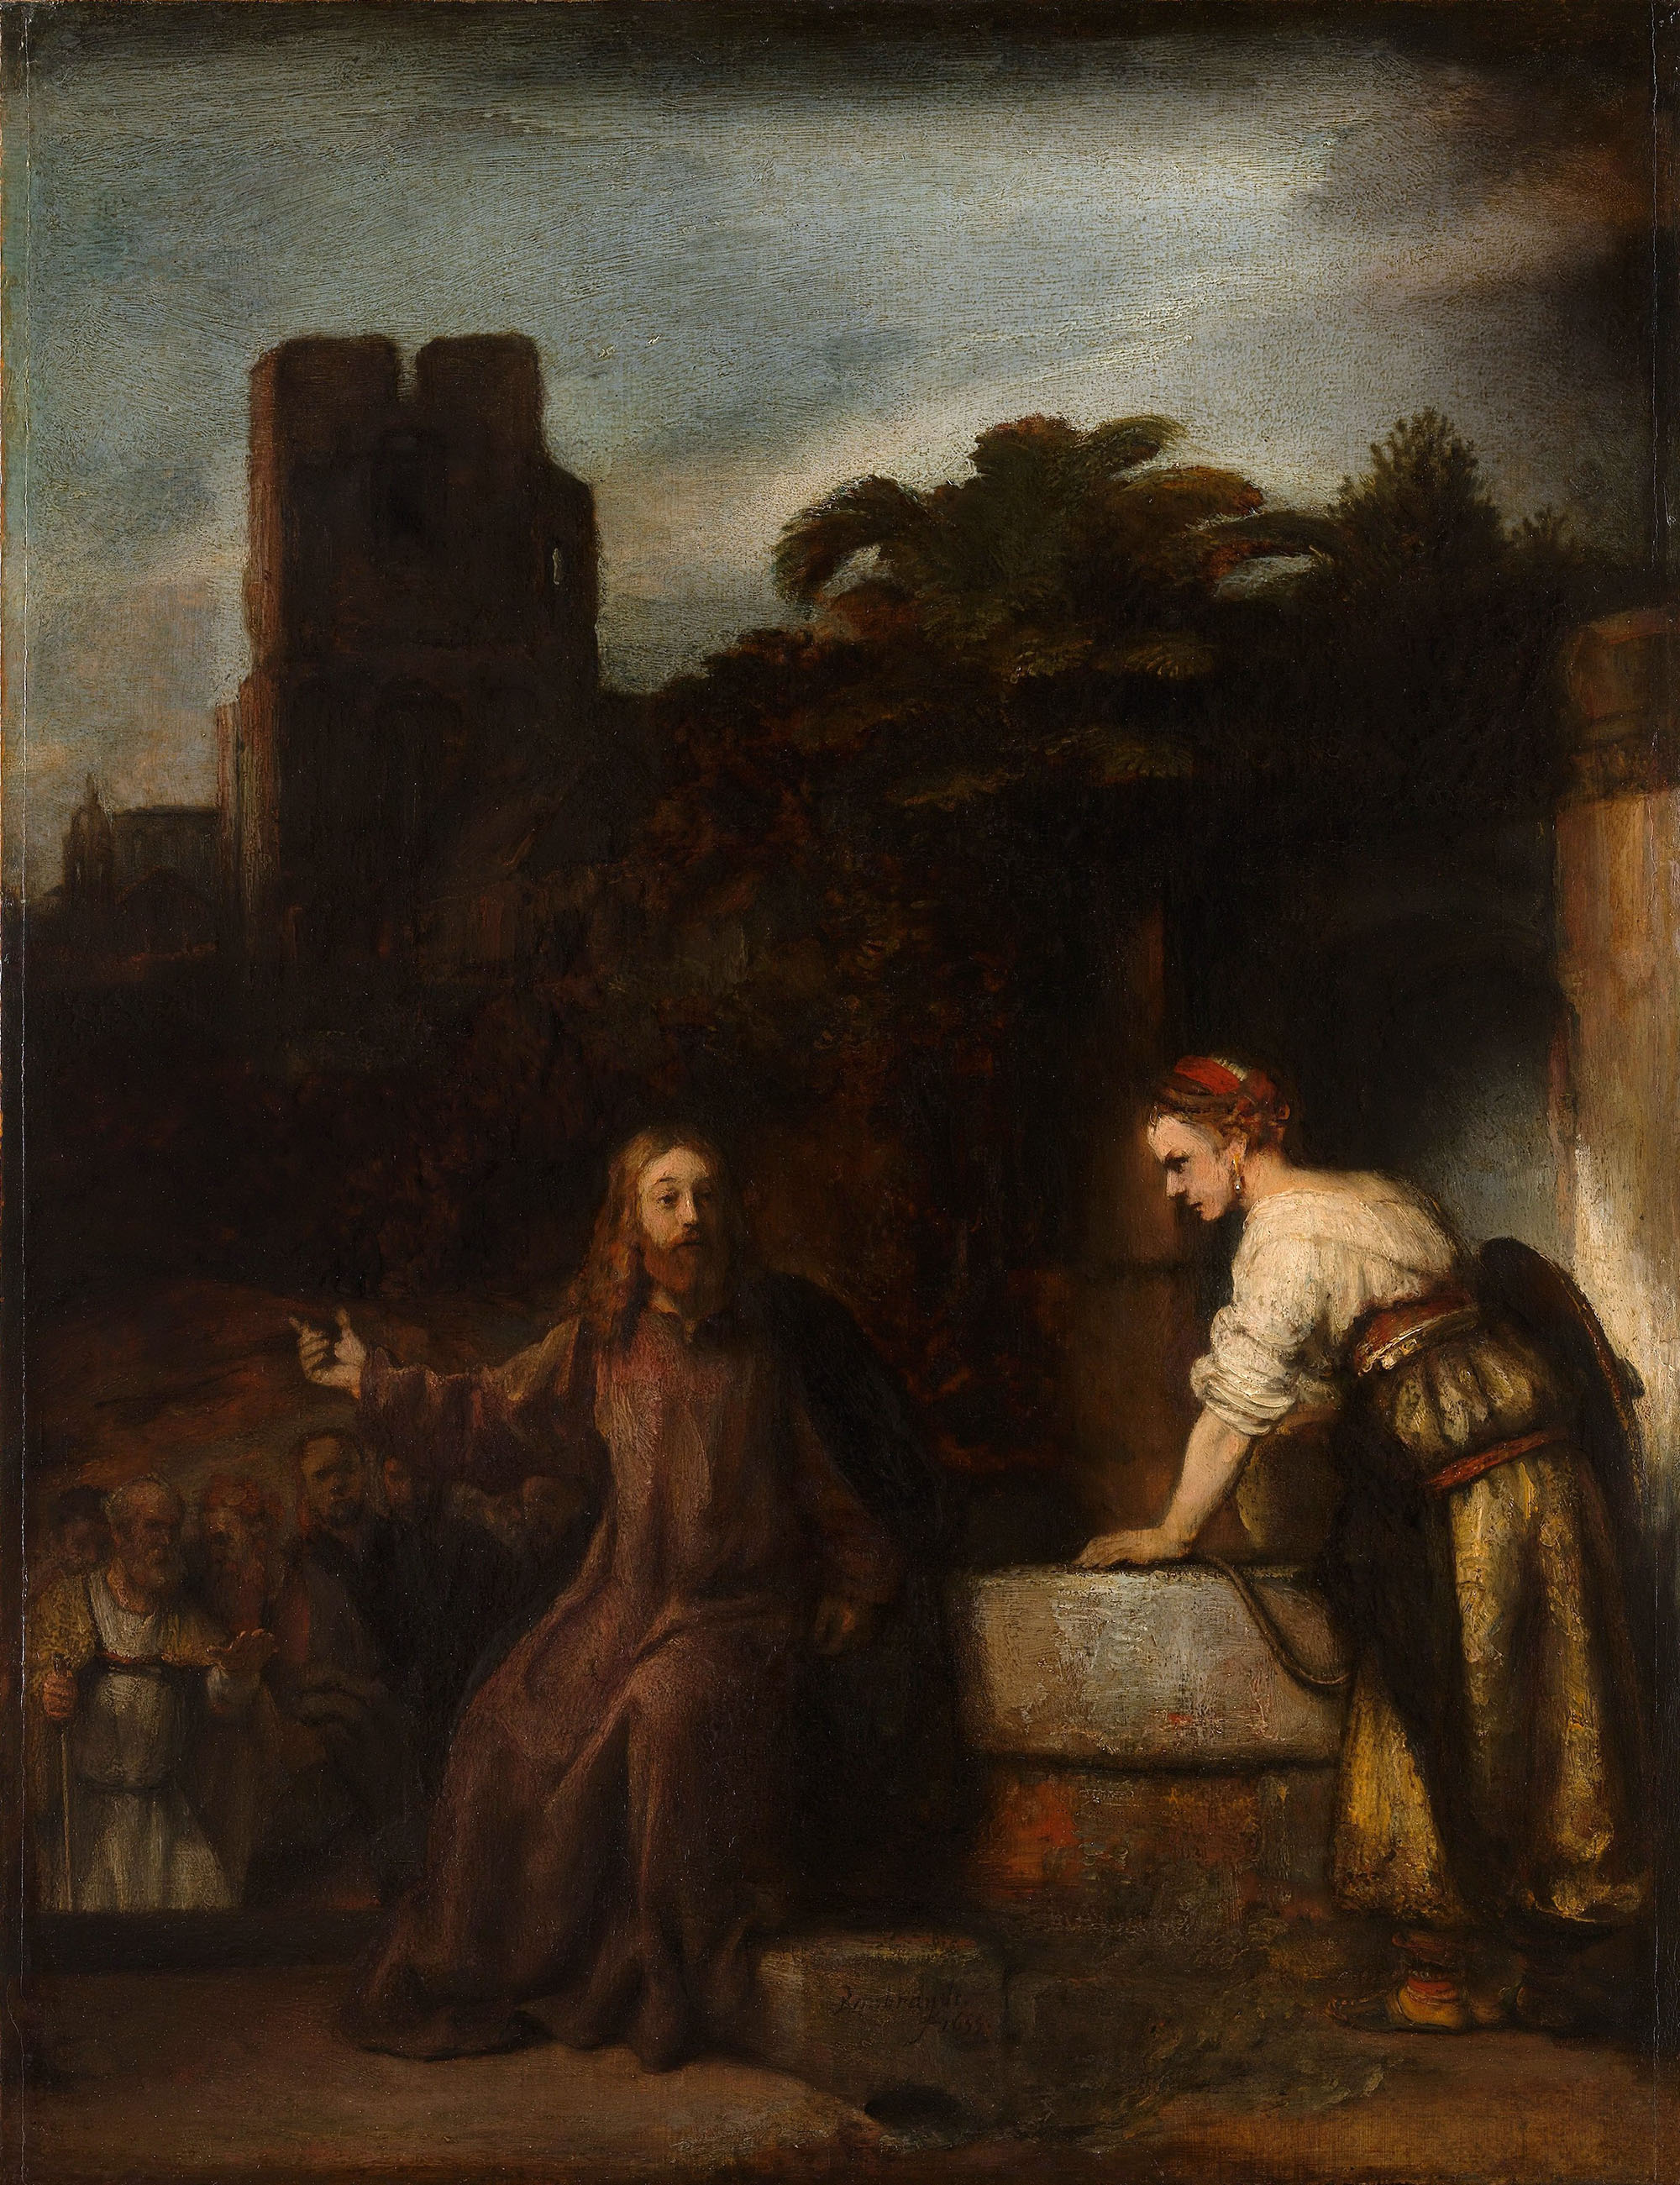 Приписывается Рембрандту. "Христос и самарянка". 1655. Музей Метрополитен, Нью-Йорк.